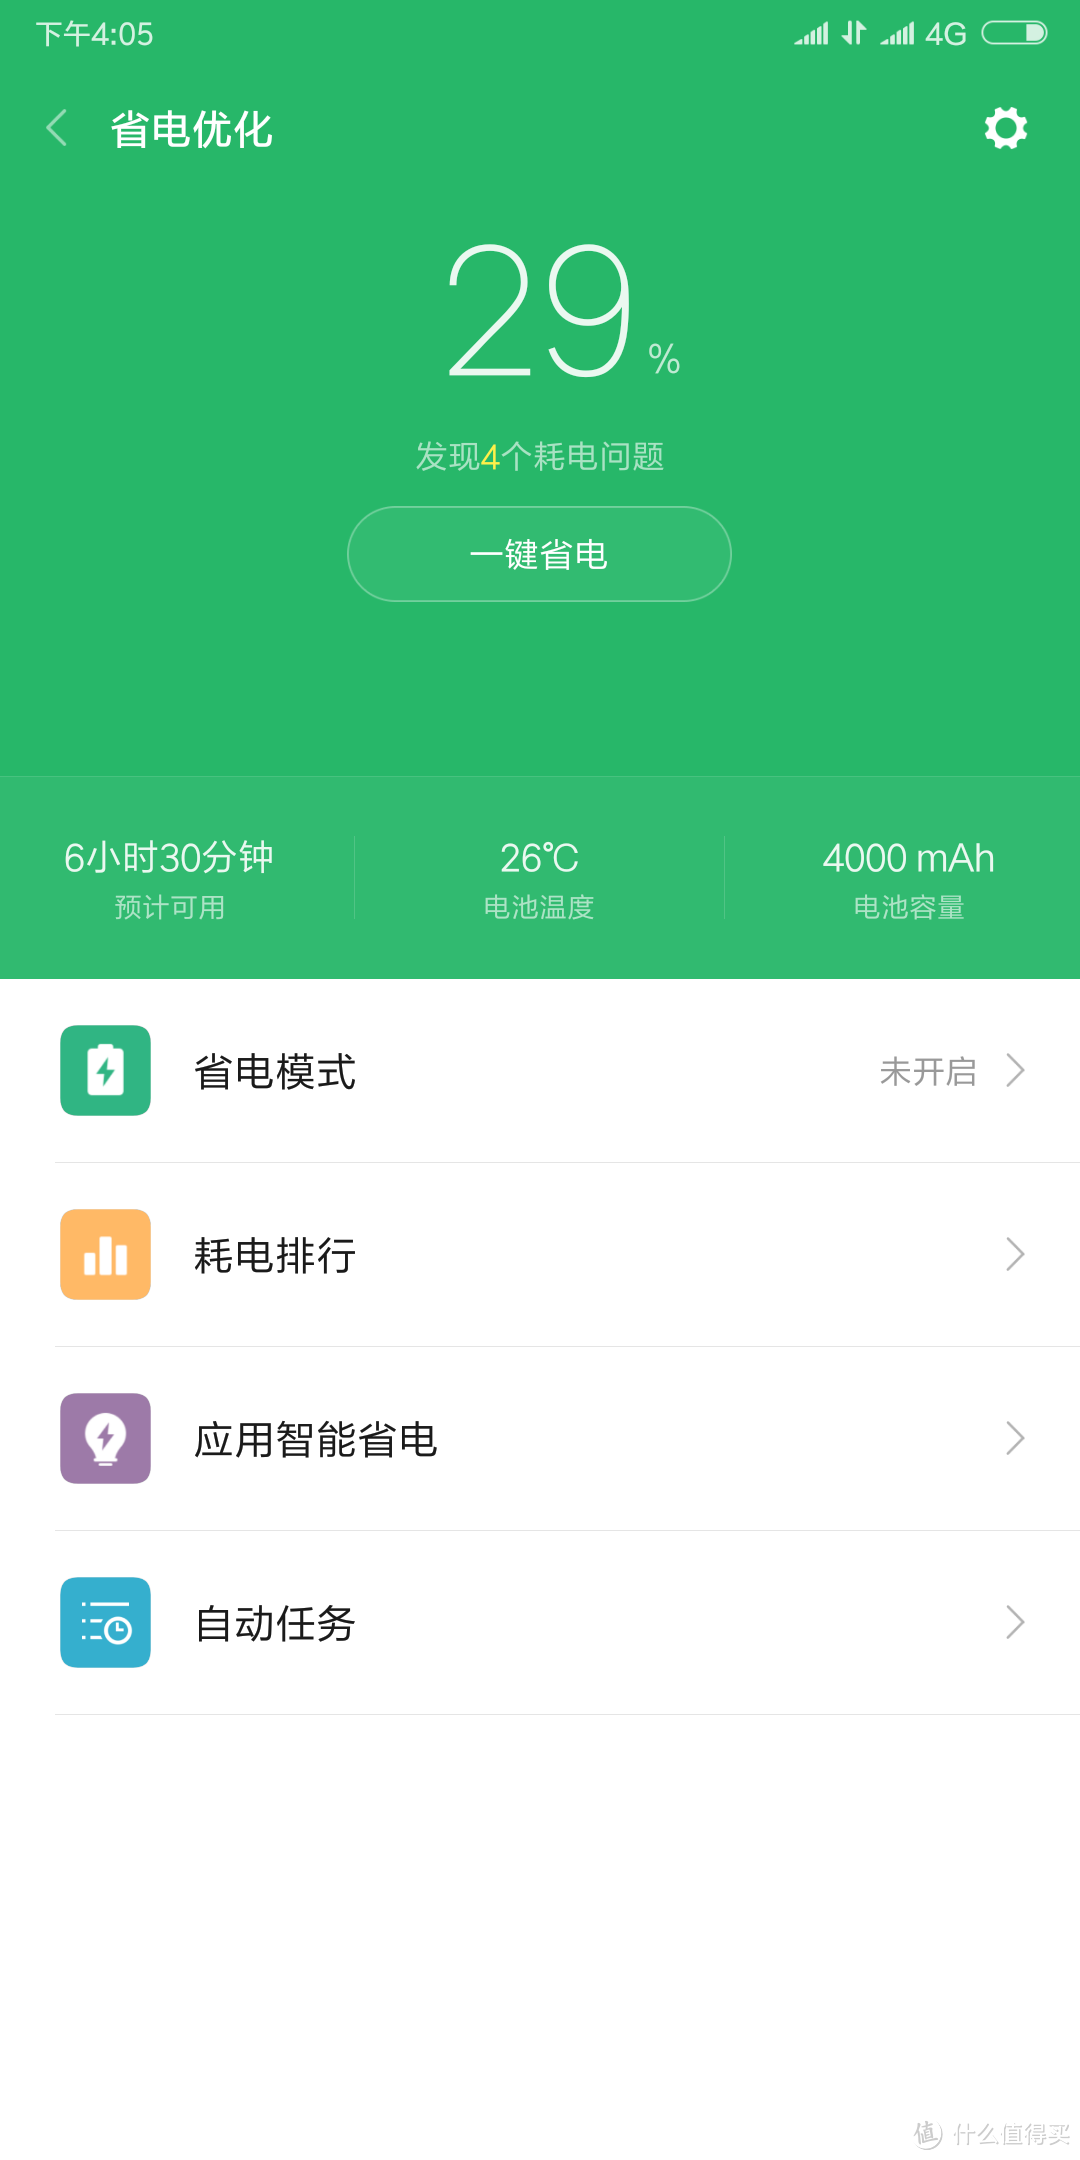 千元备用机红米Note5（3G+32G）一个月体验后告诉你值不值